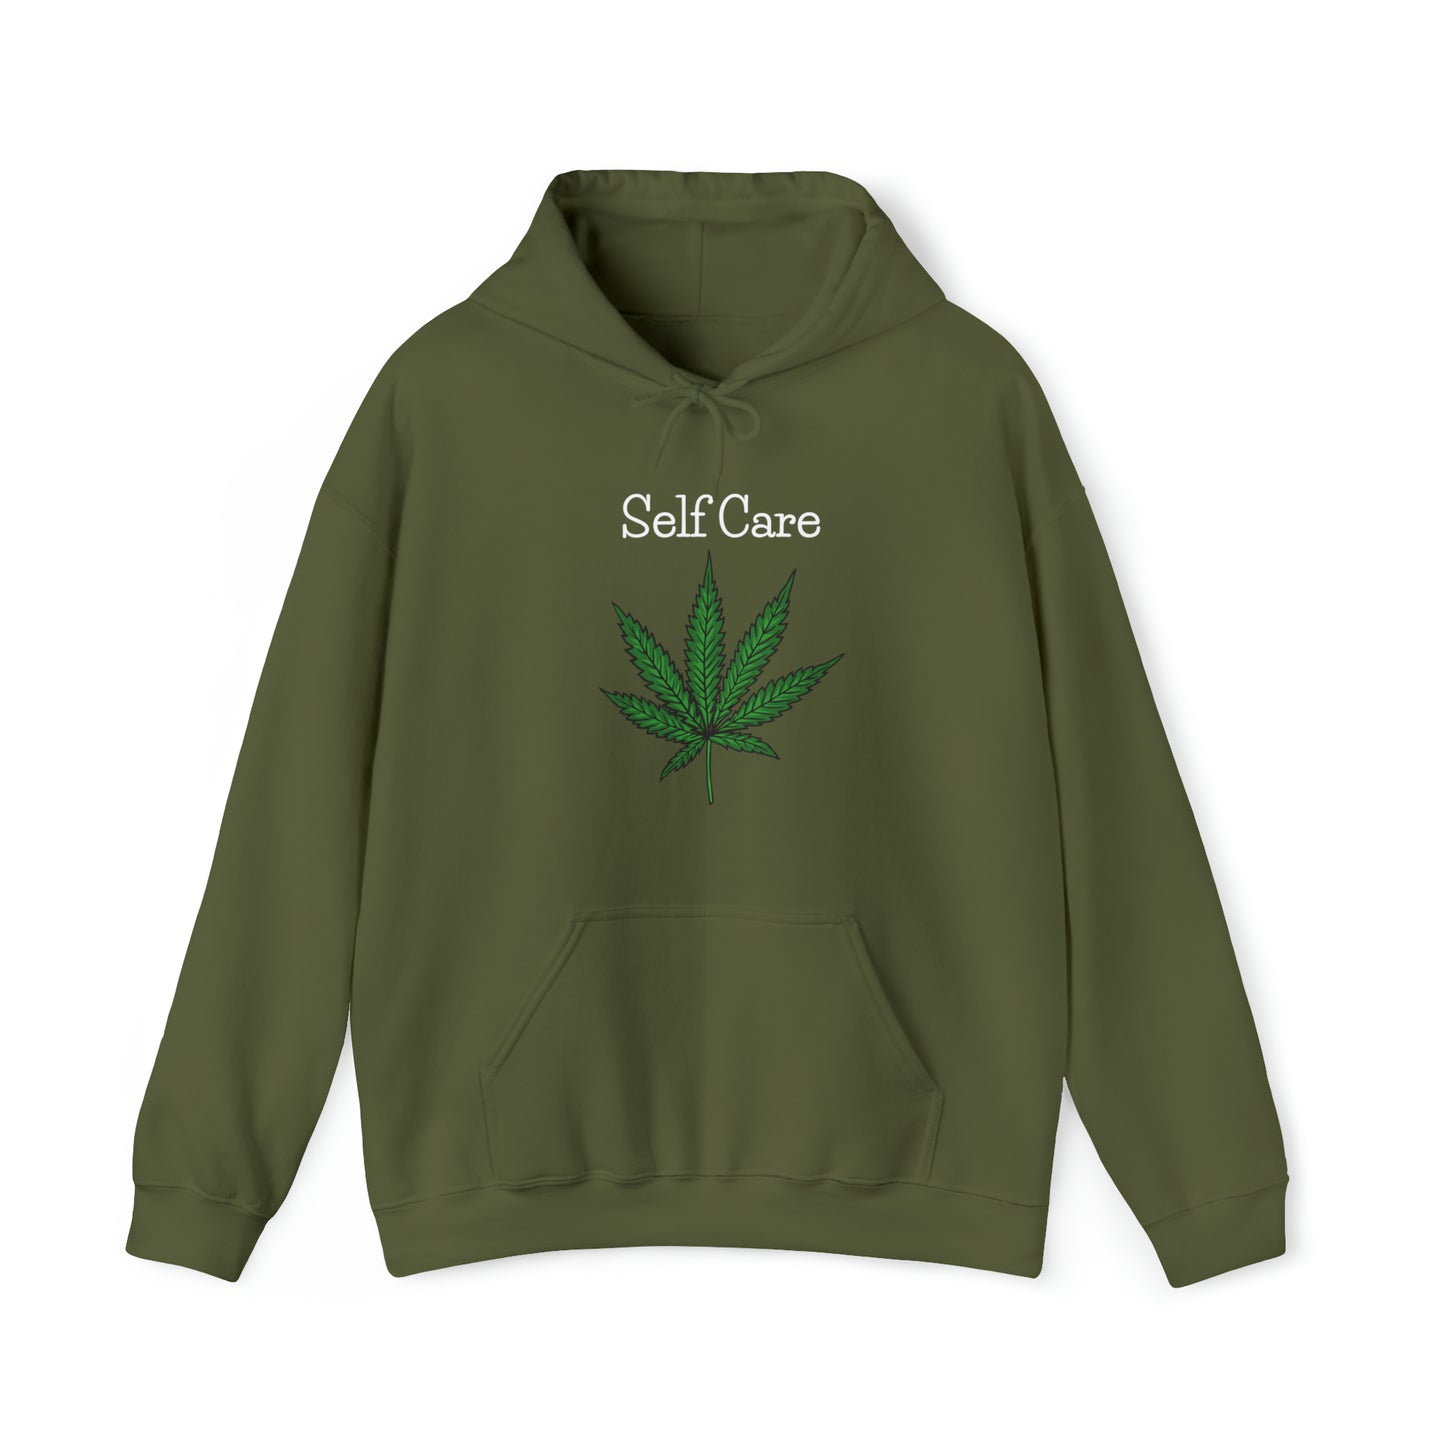 Self Care Weed Leaf Hoodies